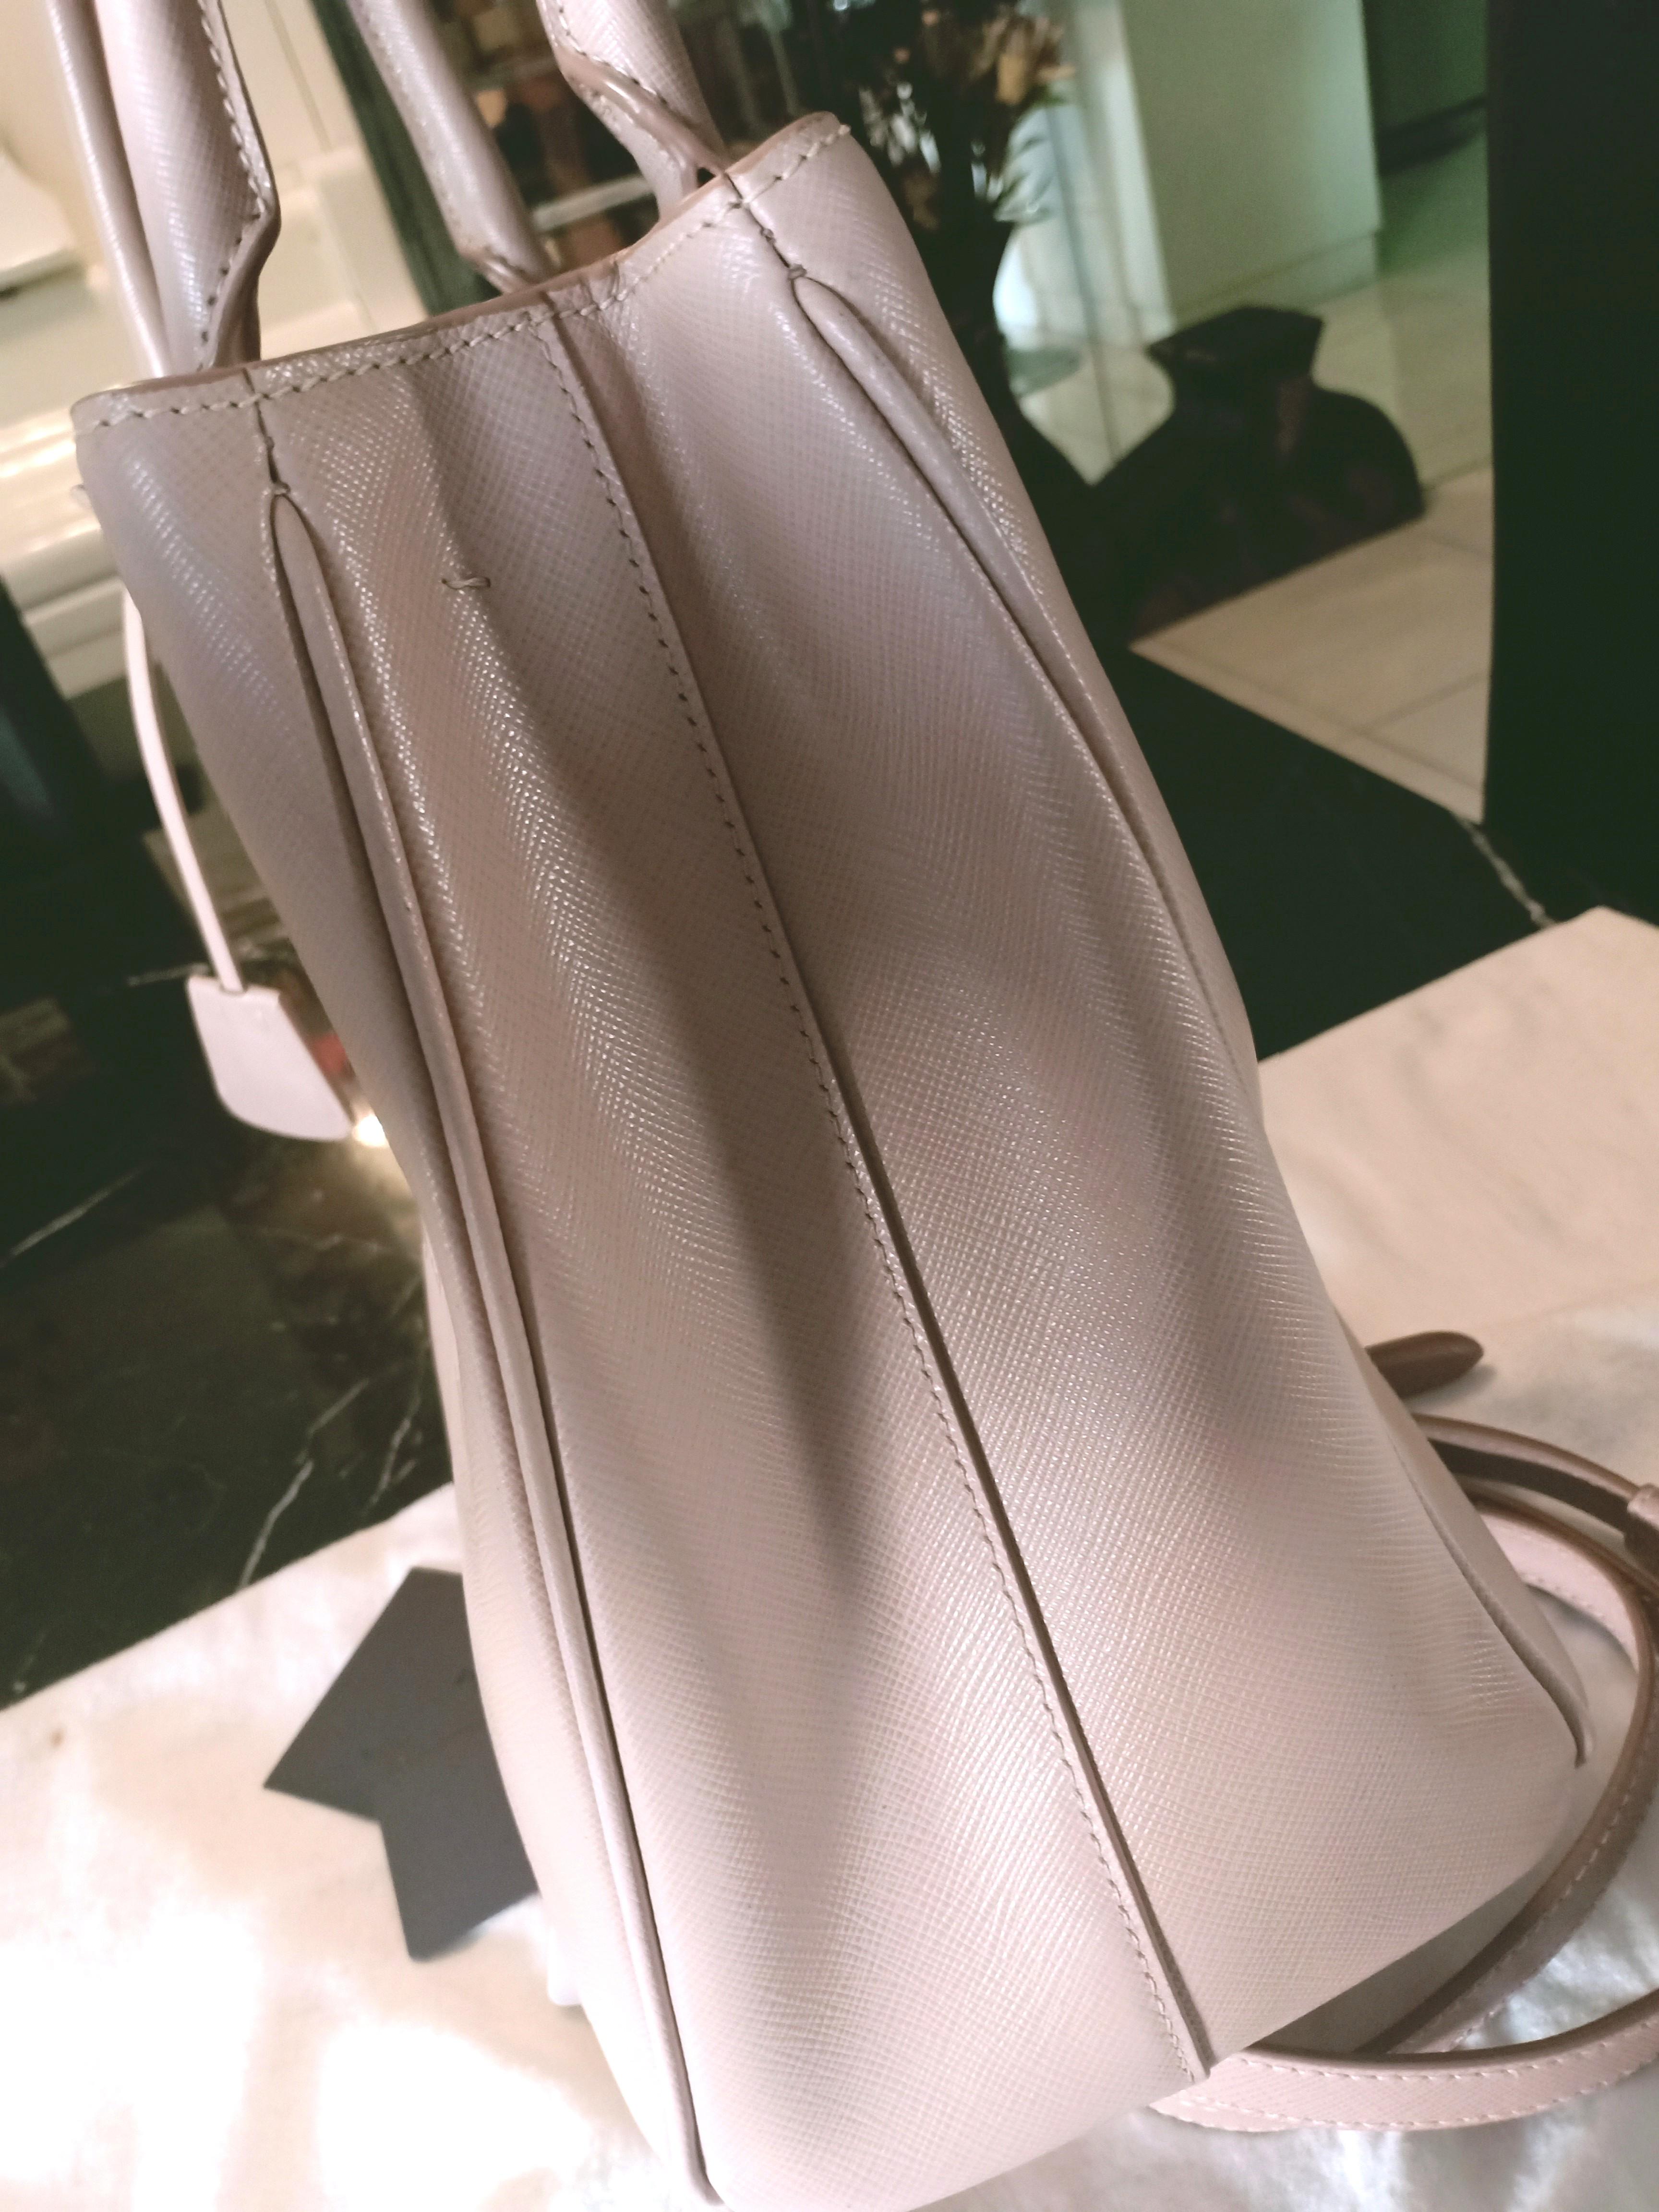 Cameo/black Medium Saffiano Leather Double Prada Bag